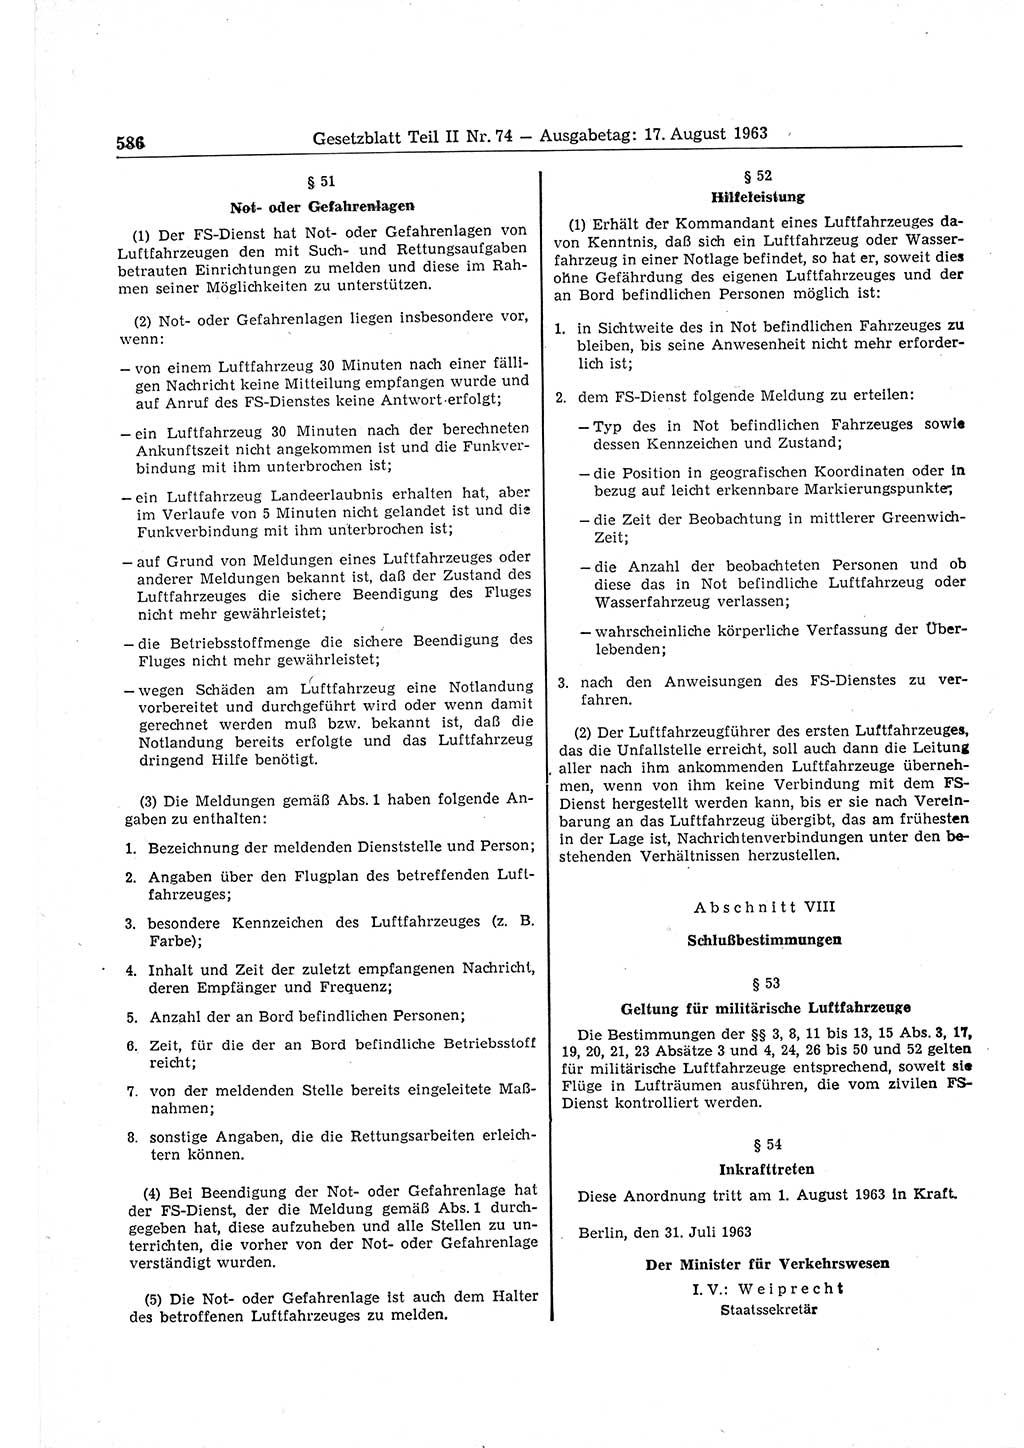 Gesetzblatt (GBl.) der Deutschen Demokratischen Republik (DDR) Teil ⅠⅠ 1963, Seite 586 (GBl. DDR ⅠⅠ 1963, S. 586)